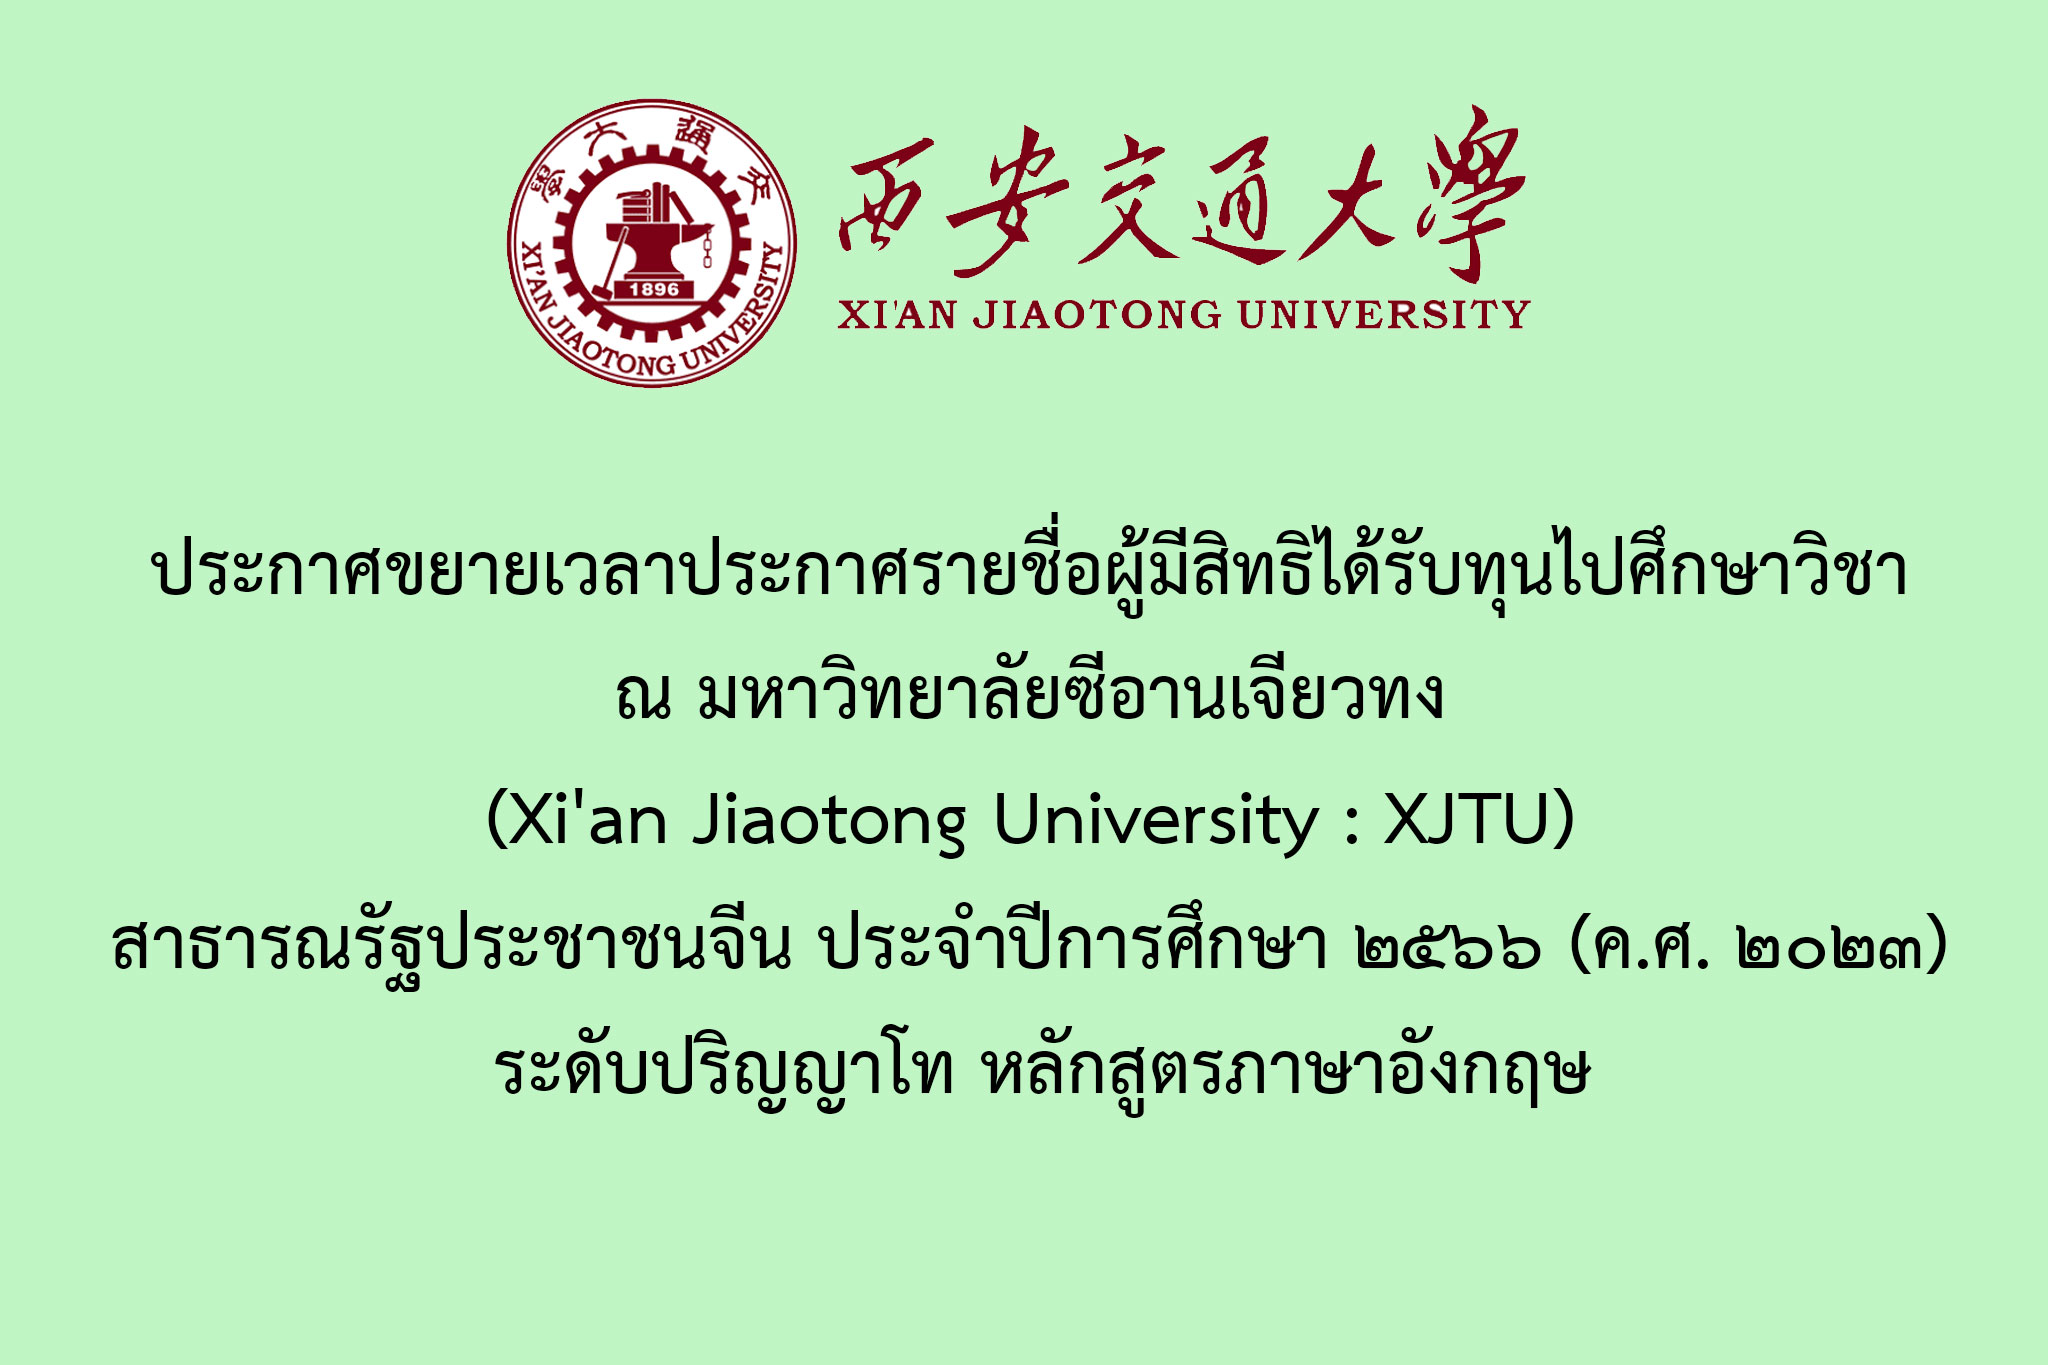 ประกาศขยายเวลาประกาศรายชื่อผู้มีสิทธิได้รับทุนไปศึกษาวิชา ณ มหาวิทยาลัยซีอานเจียวทง (Xi'an Jiaotong University : XJTU) สาธารณรัฐประชาชนจีน ประจำปีการศึกษา ๒๕๖๖ (ค.ศ. ๒๐๒๓) ระดับปริญญาโท หลักสูตรภาษาอังกฤษ